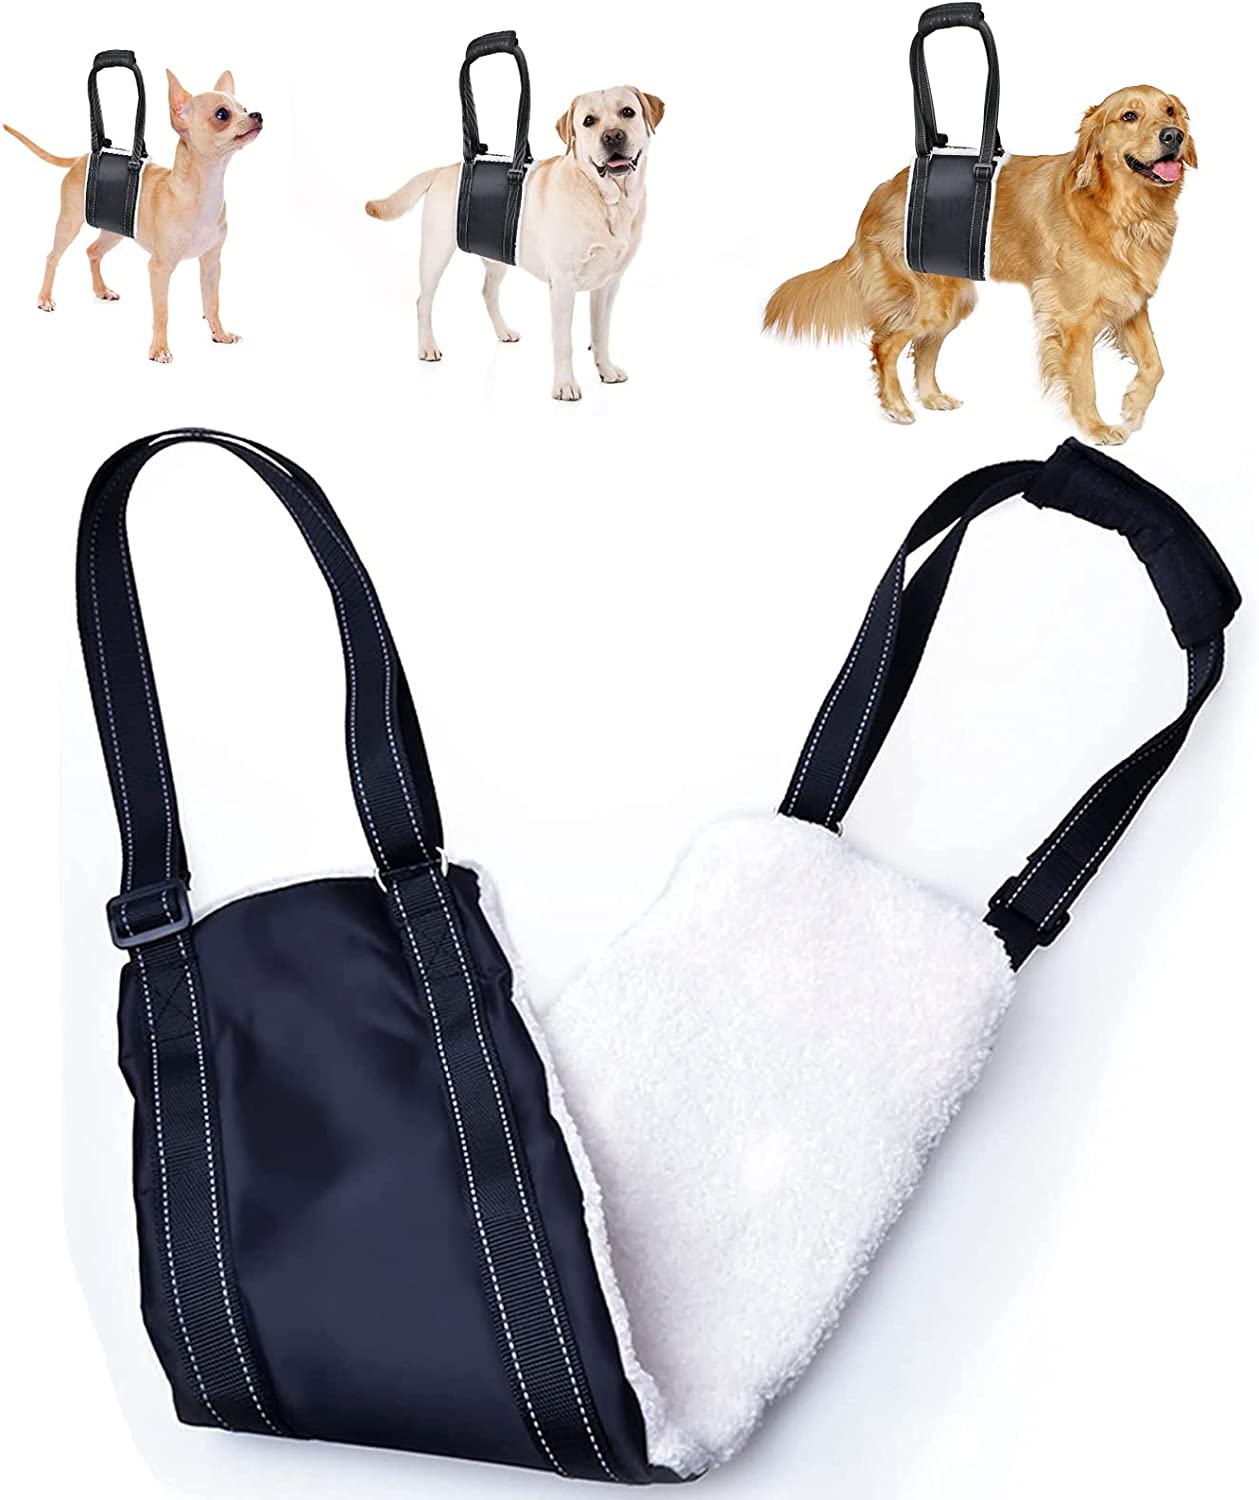 بند / لیش کمکی حرکتی سگ برای ساق پا باسن ، بند بلند کردن باسن برای بلند کردن حیوانات خانگی برند: Mobility  کد : AM 603